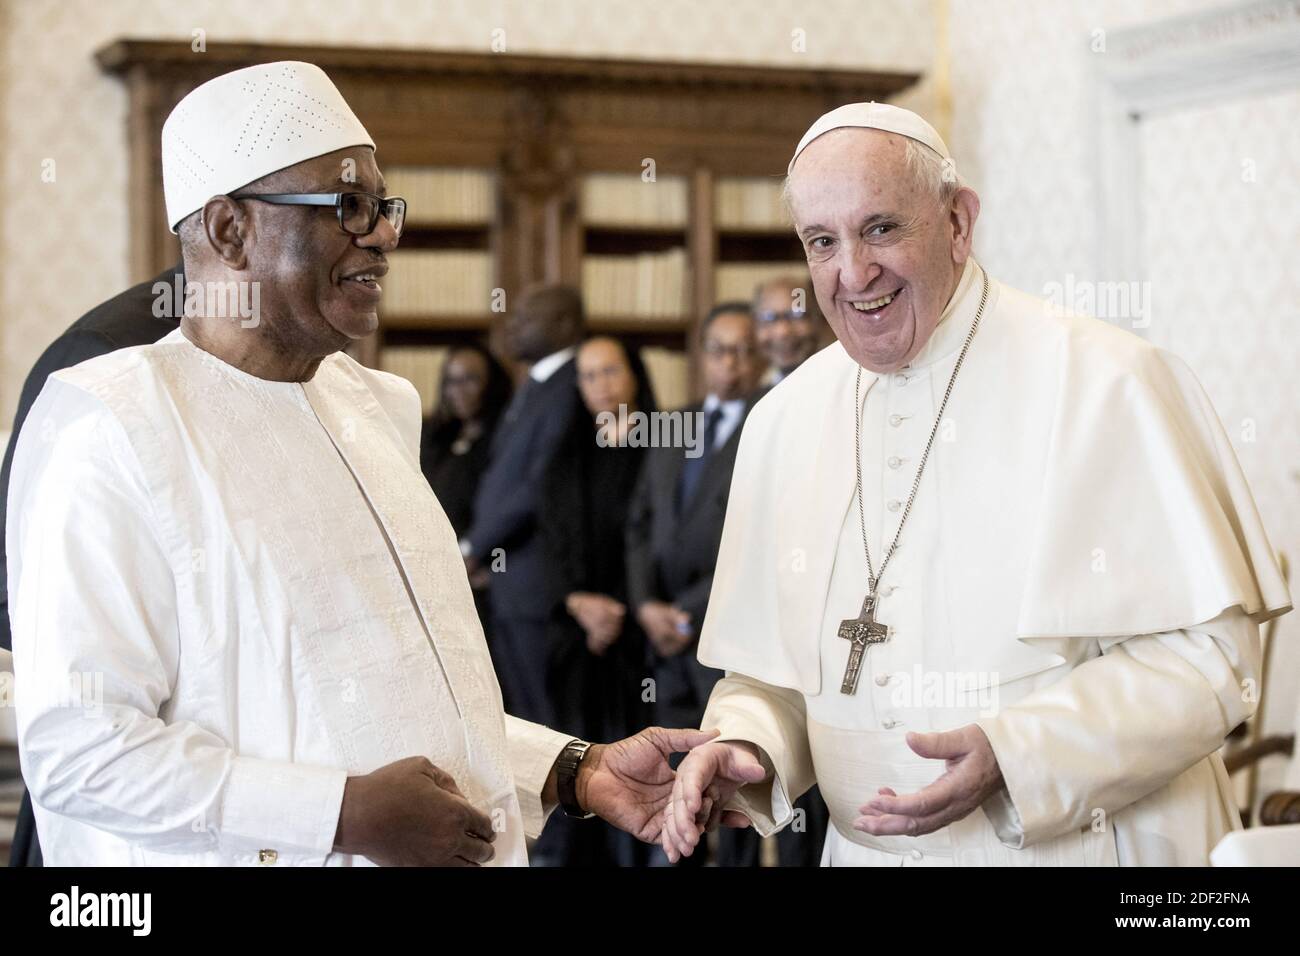 El Papa Francisco se reúne con el presidente de Malí, Ibrahim Boubacar Keita, durante una audiencia privada en el Vaticano el 13 de febrero de 2020. Foto por ABACAPRESS.COM Foto de stock